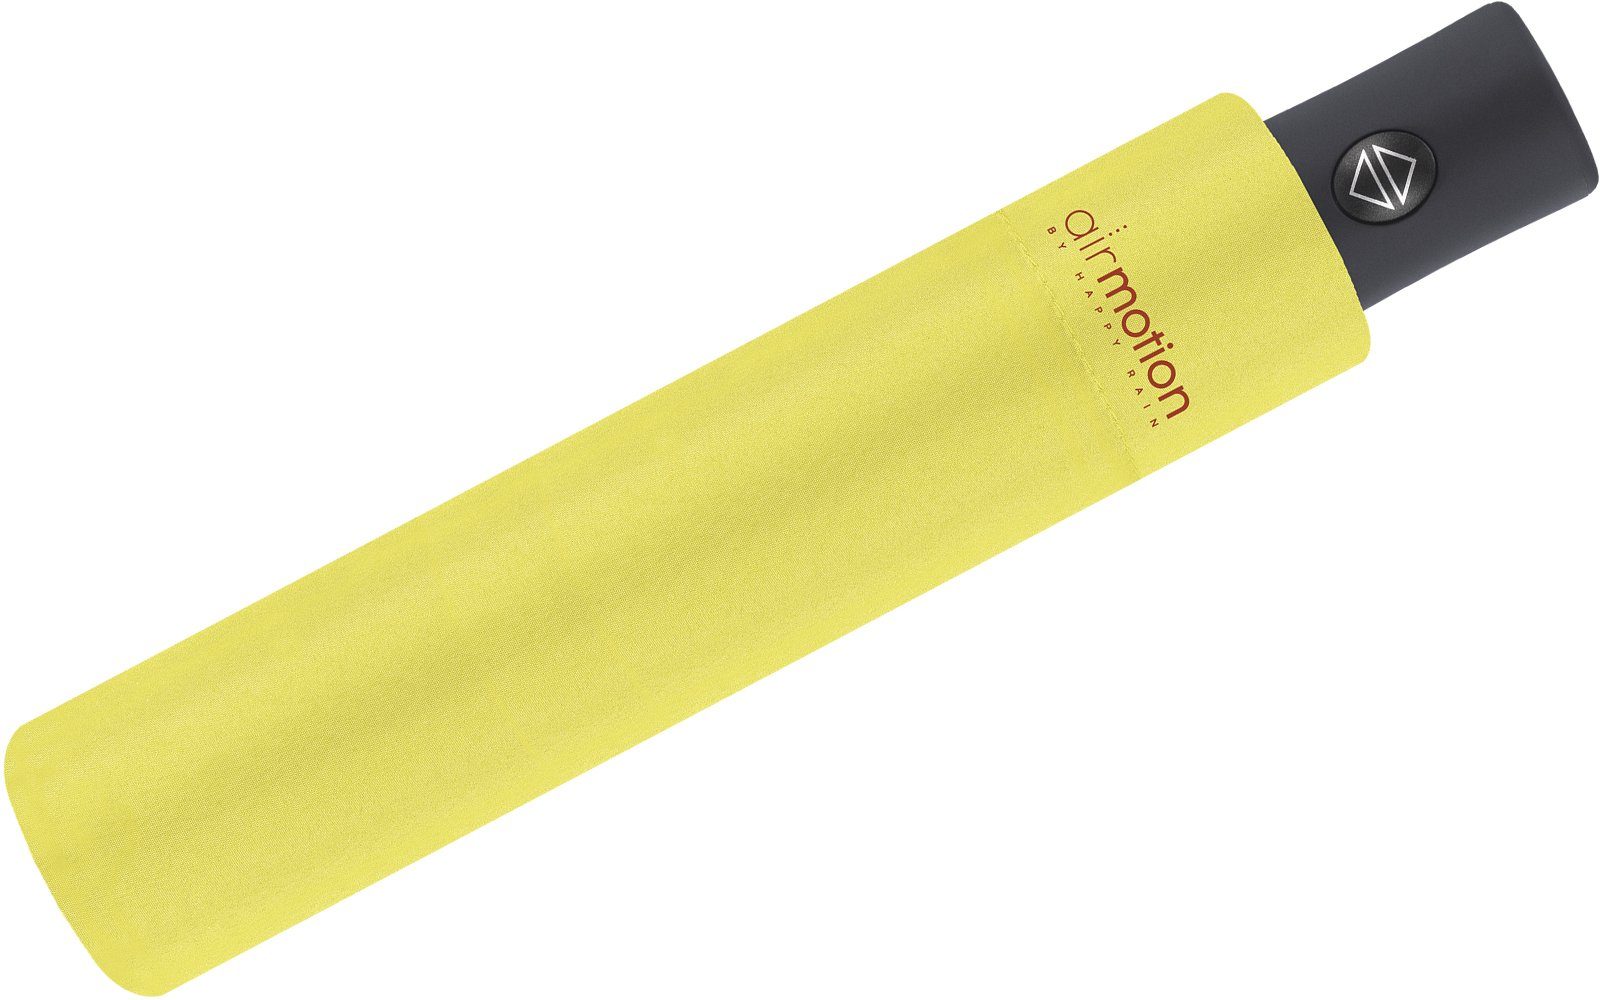 Taschenregenschirm - Air leichtester perfekt für HAPPY 174 RAIN Gepäck Handtasche superleicht, g - und Motion Auf-Zu-Automatik Minischirm vollautomatischer gelb